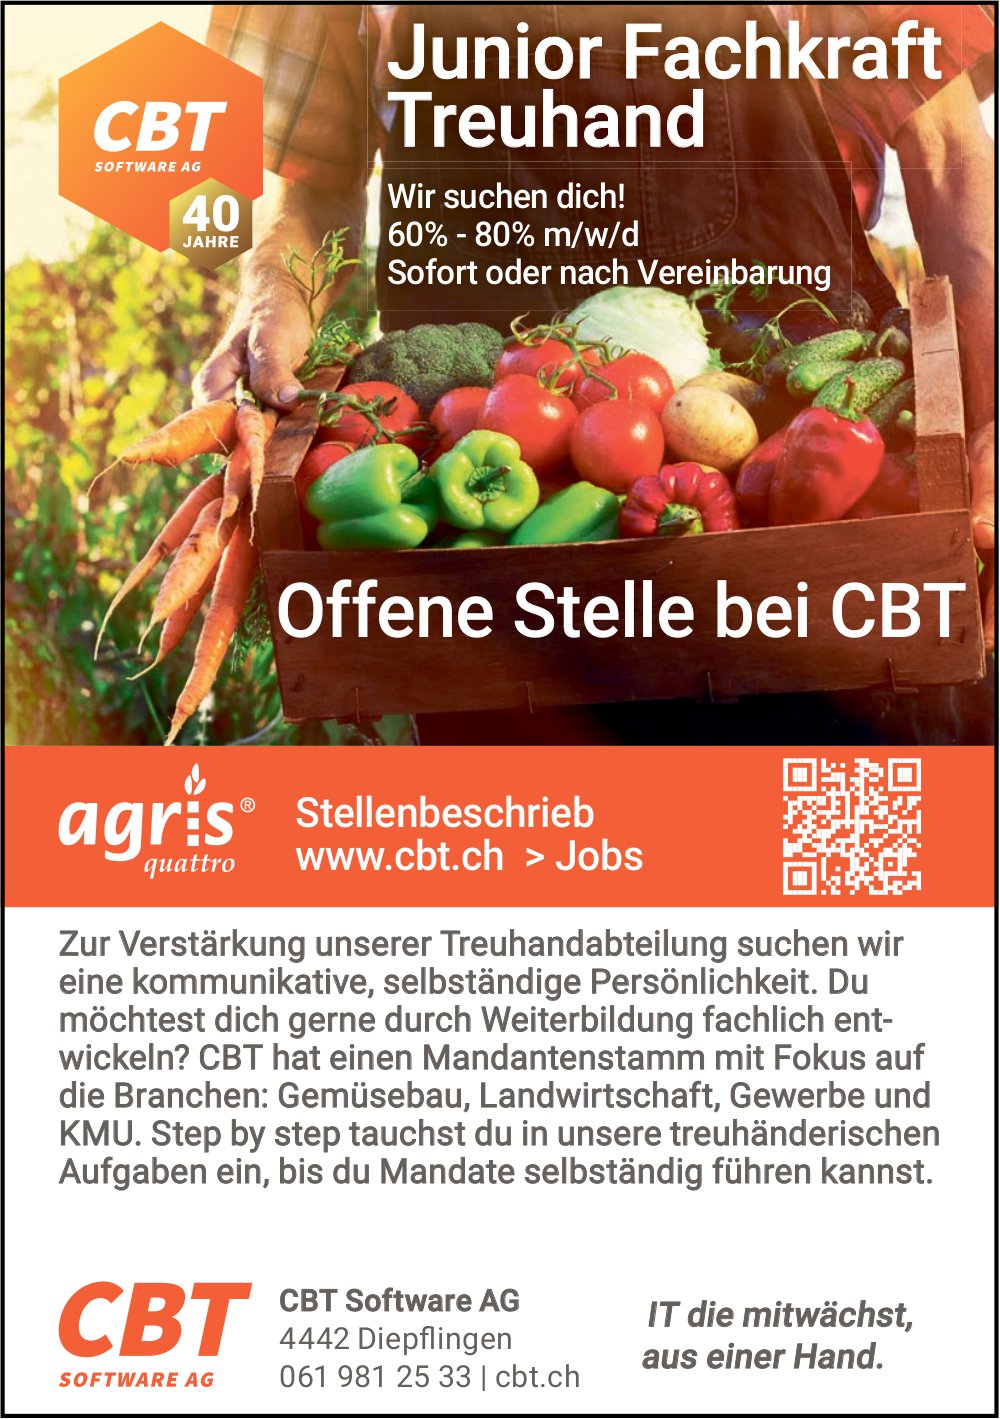 Junior Fachkraft Treuhand, CBT Software AG, Diepflingen, Gesucht